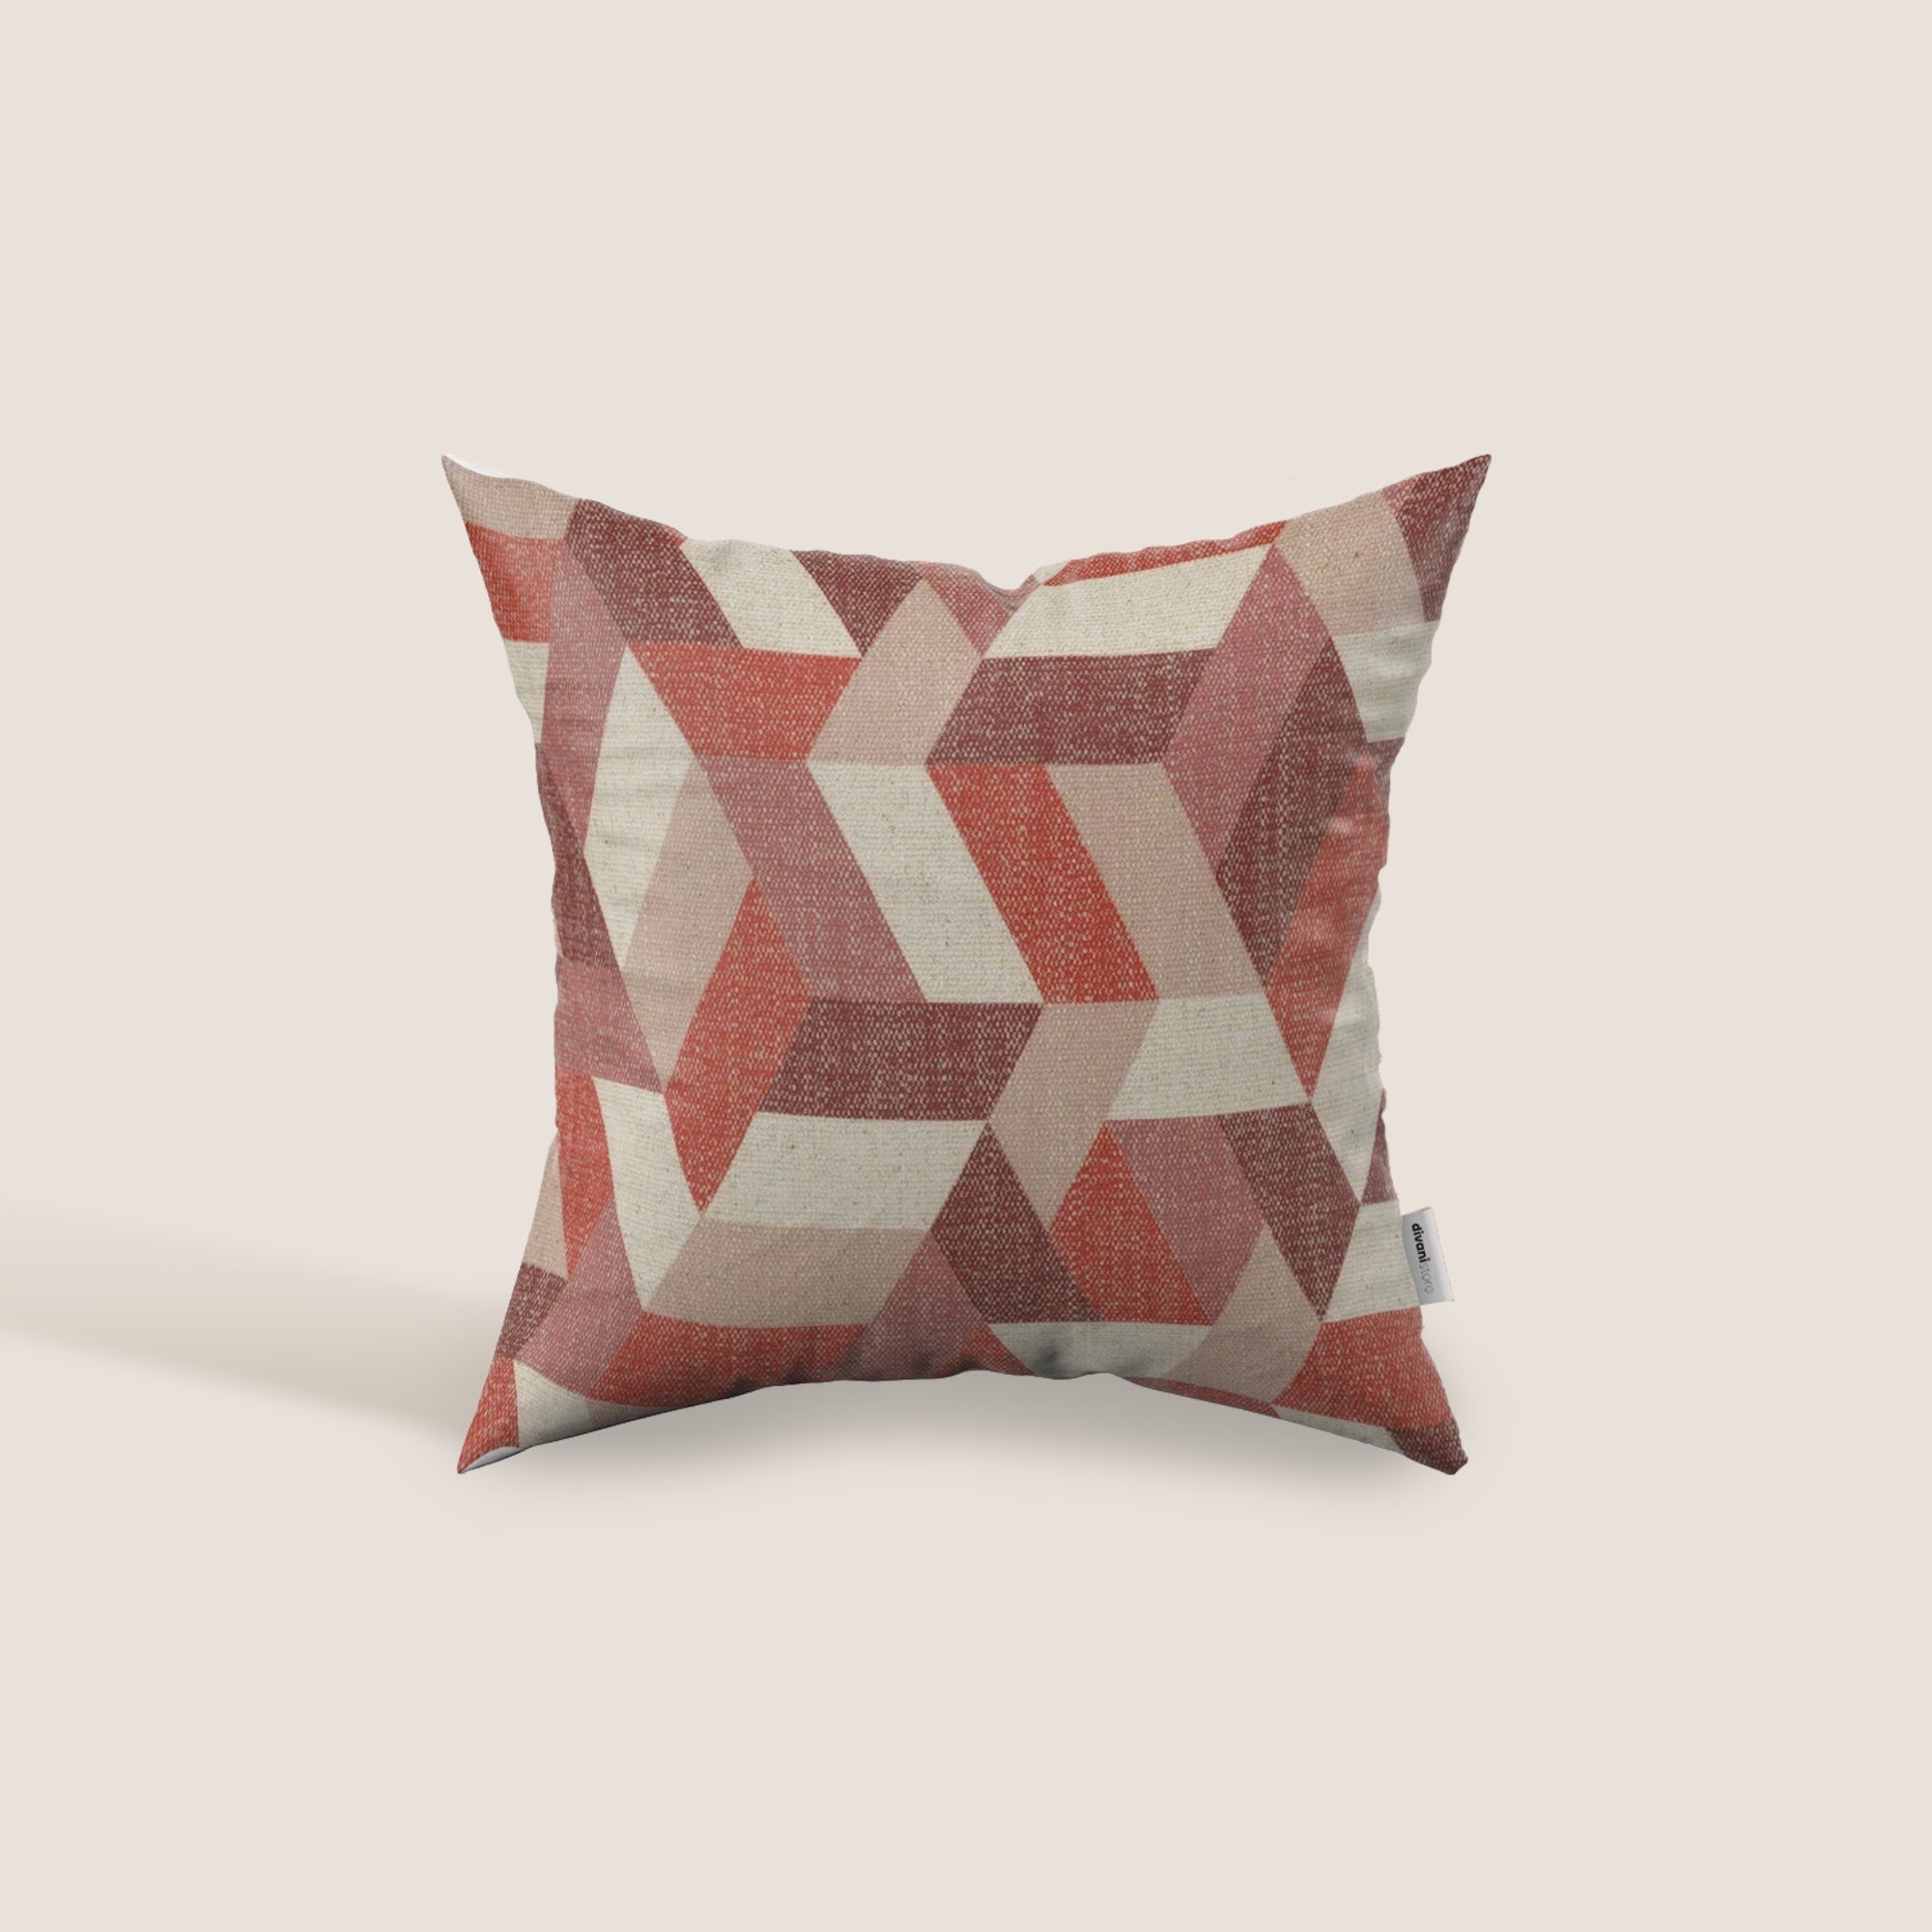 Unreal cuscini a fantasia geometriche in tessuto idrorepellente disponibile in diverse colorazioni